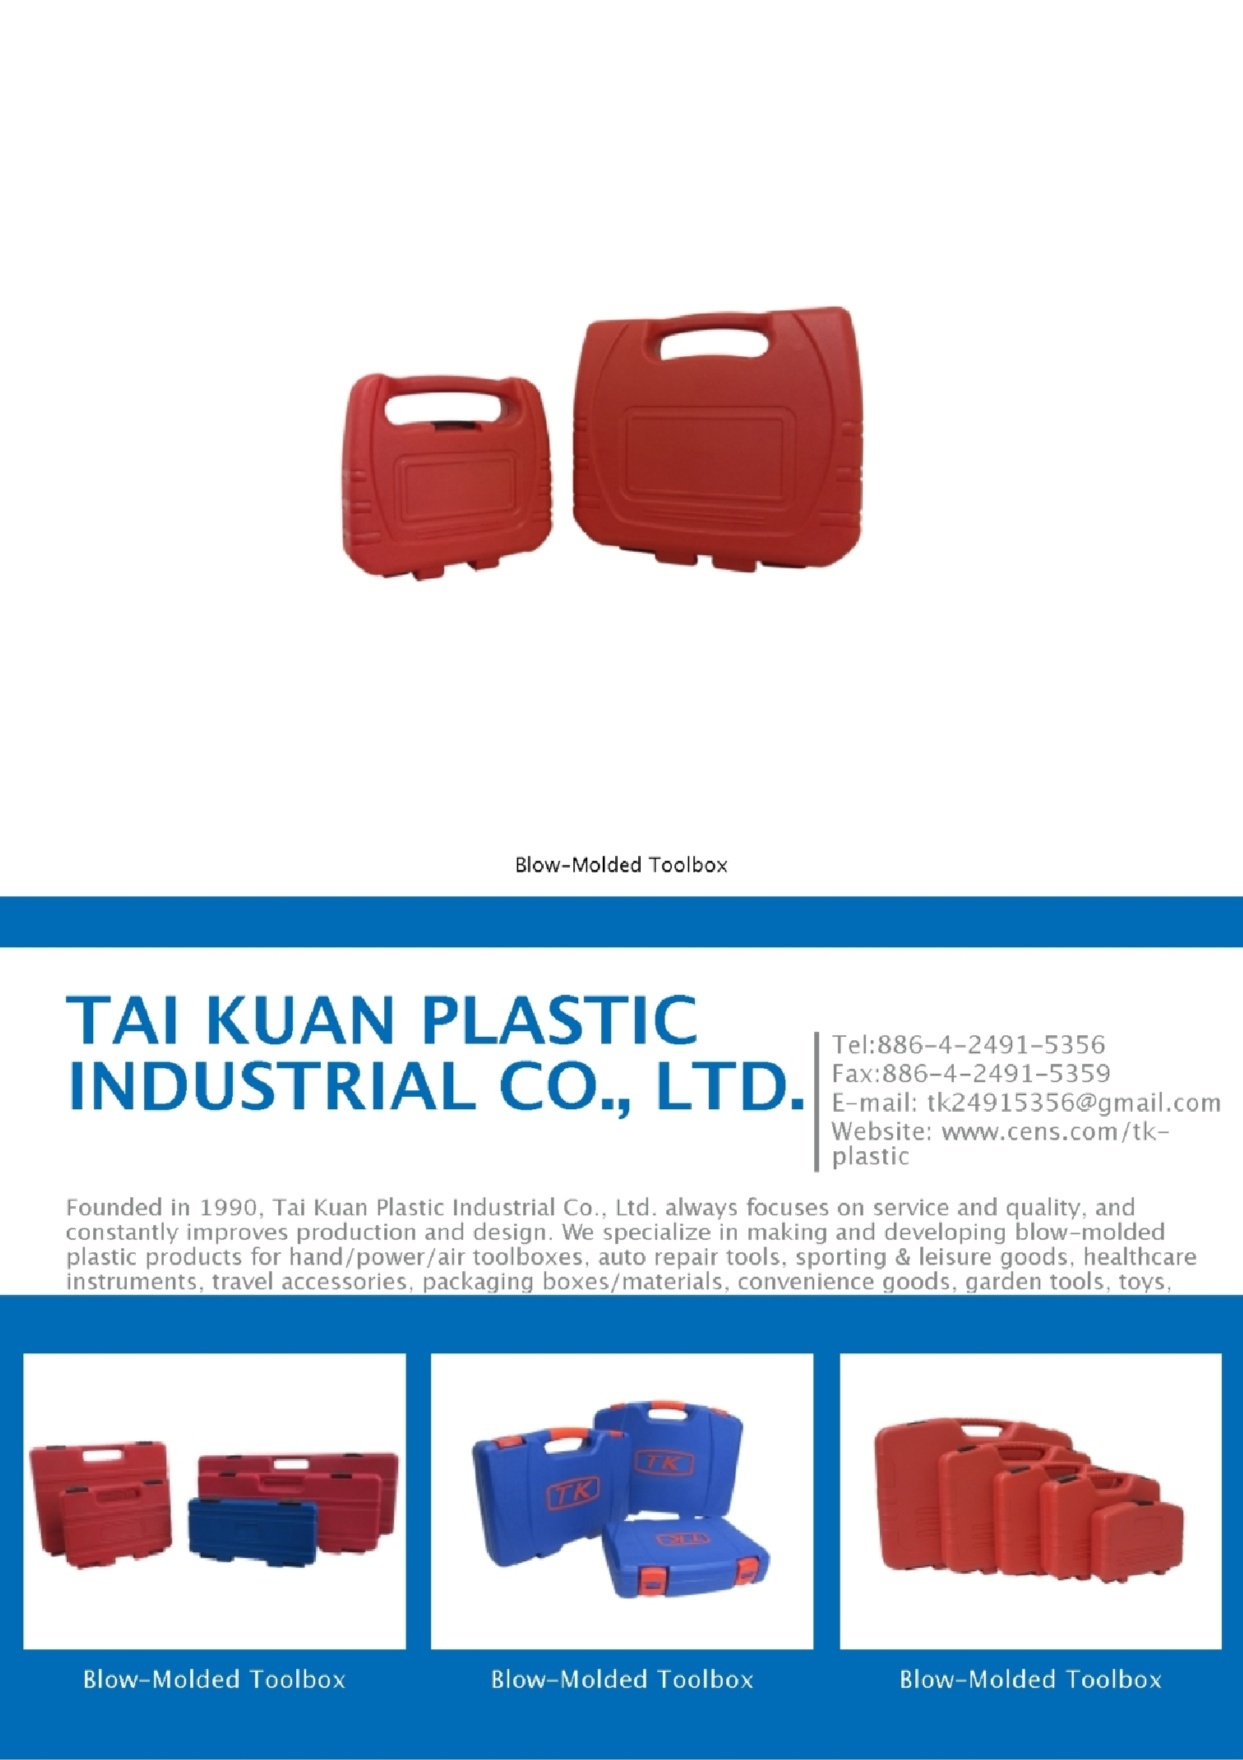 TAI KUAN PLASTIC INDUSTRIAL CO., LTD.